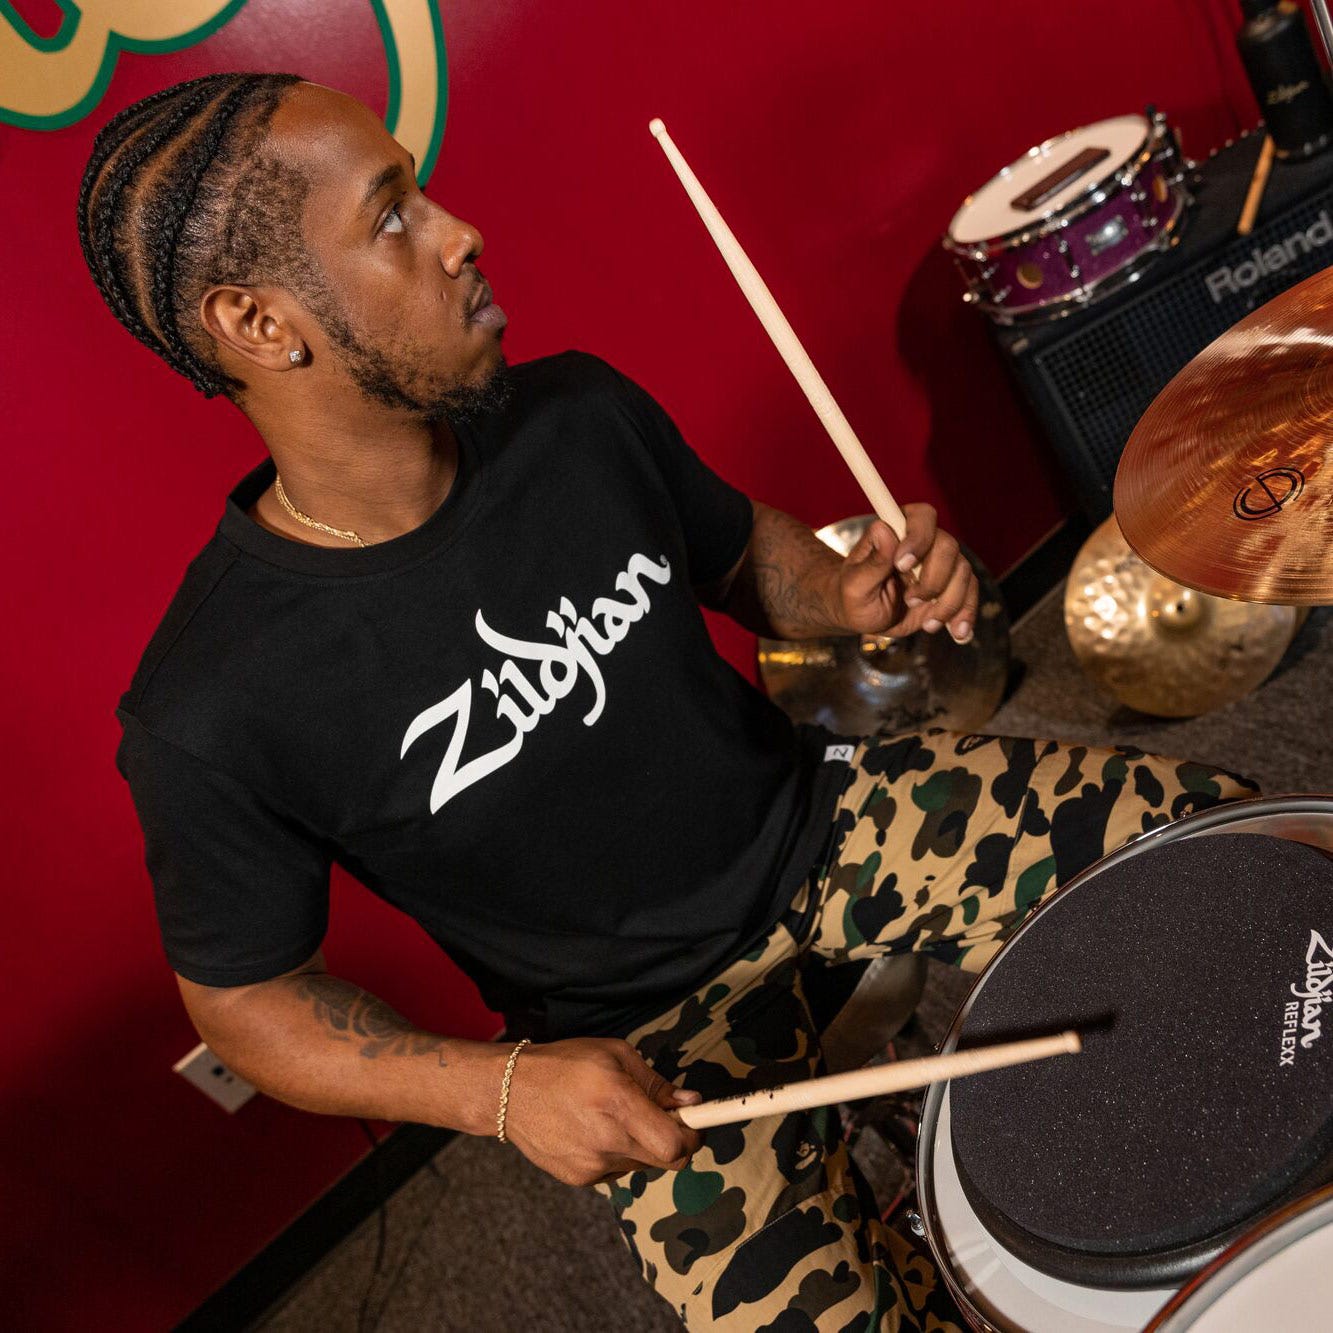 Black Zildjian Lifestyle drumming pose